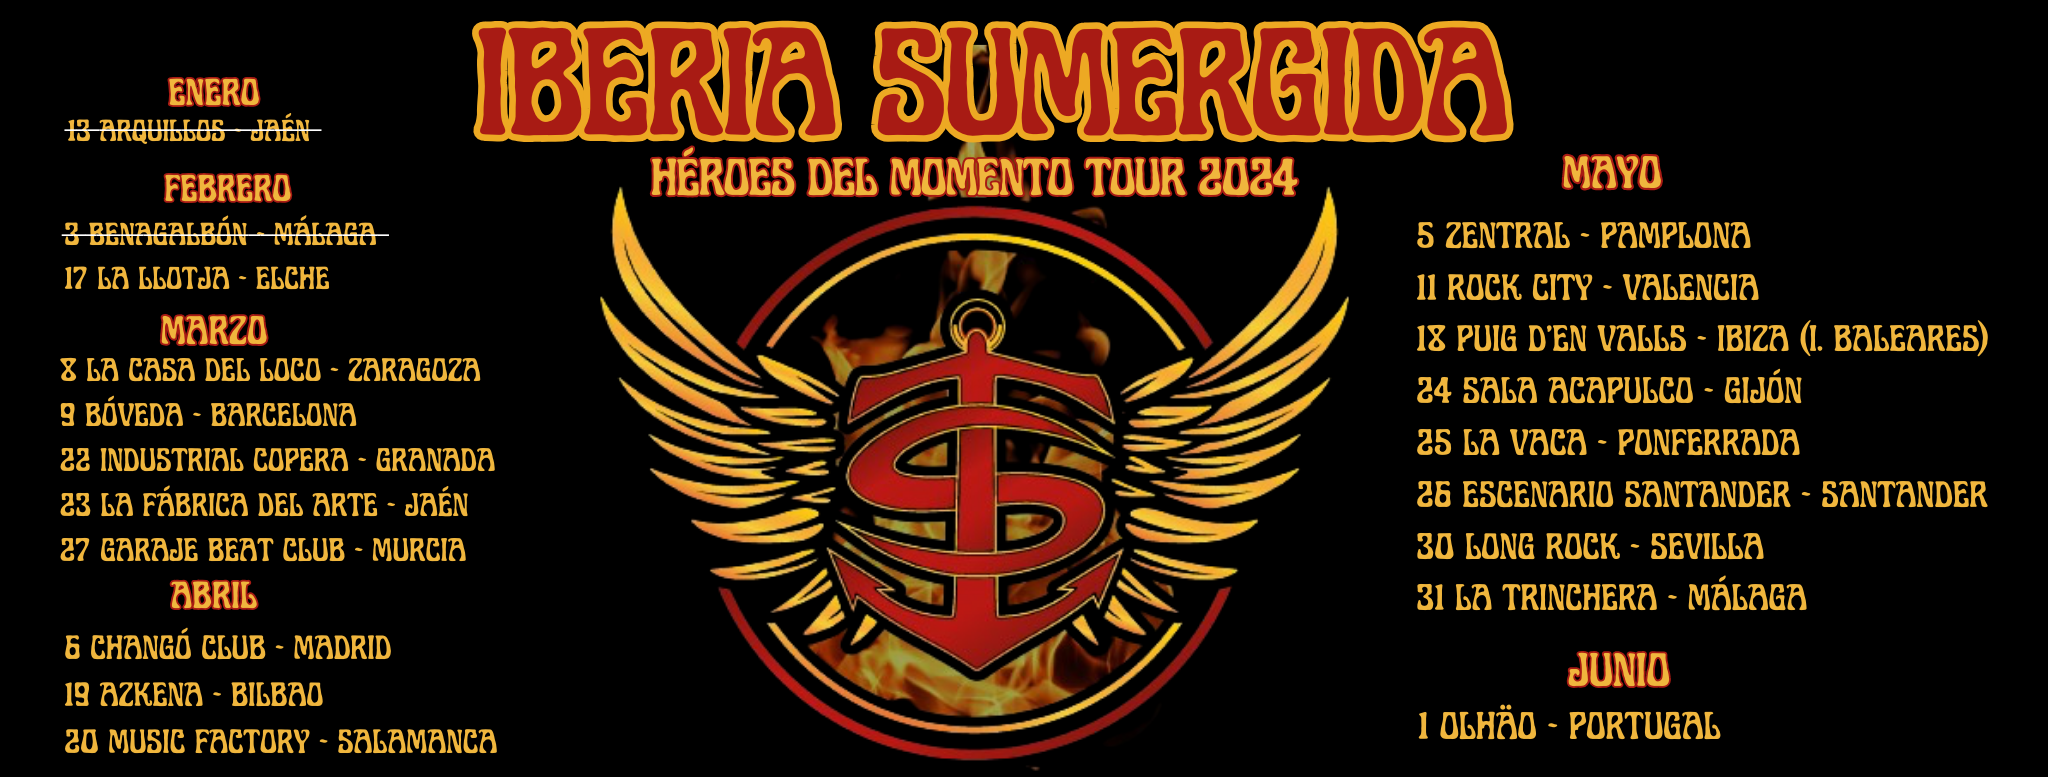 Concierto de Iberia Sumergida en la Sala Escenario Santander (Santander, Cantabria), el 26 de mayo de 2024 a las 20:00h.